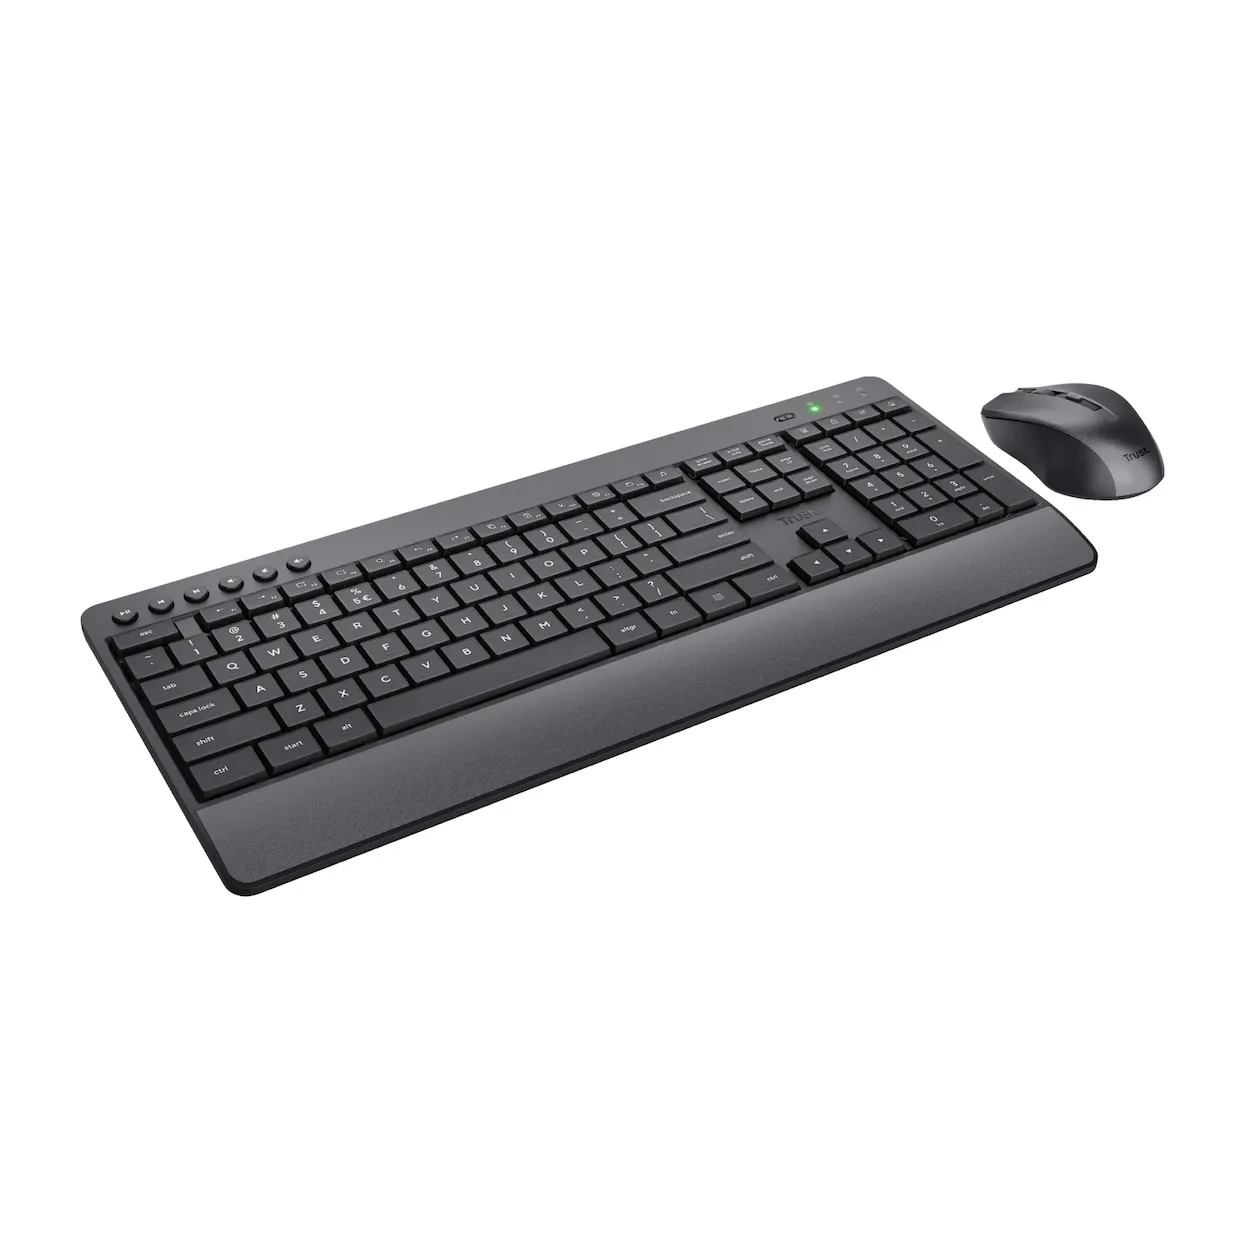 Trust Trezo Comfort Draadloze Keyboard & Mouse Set